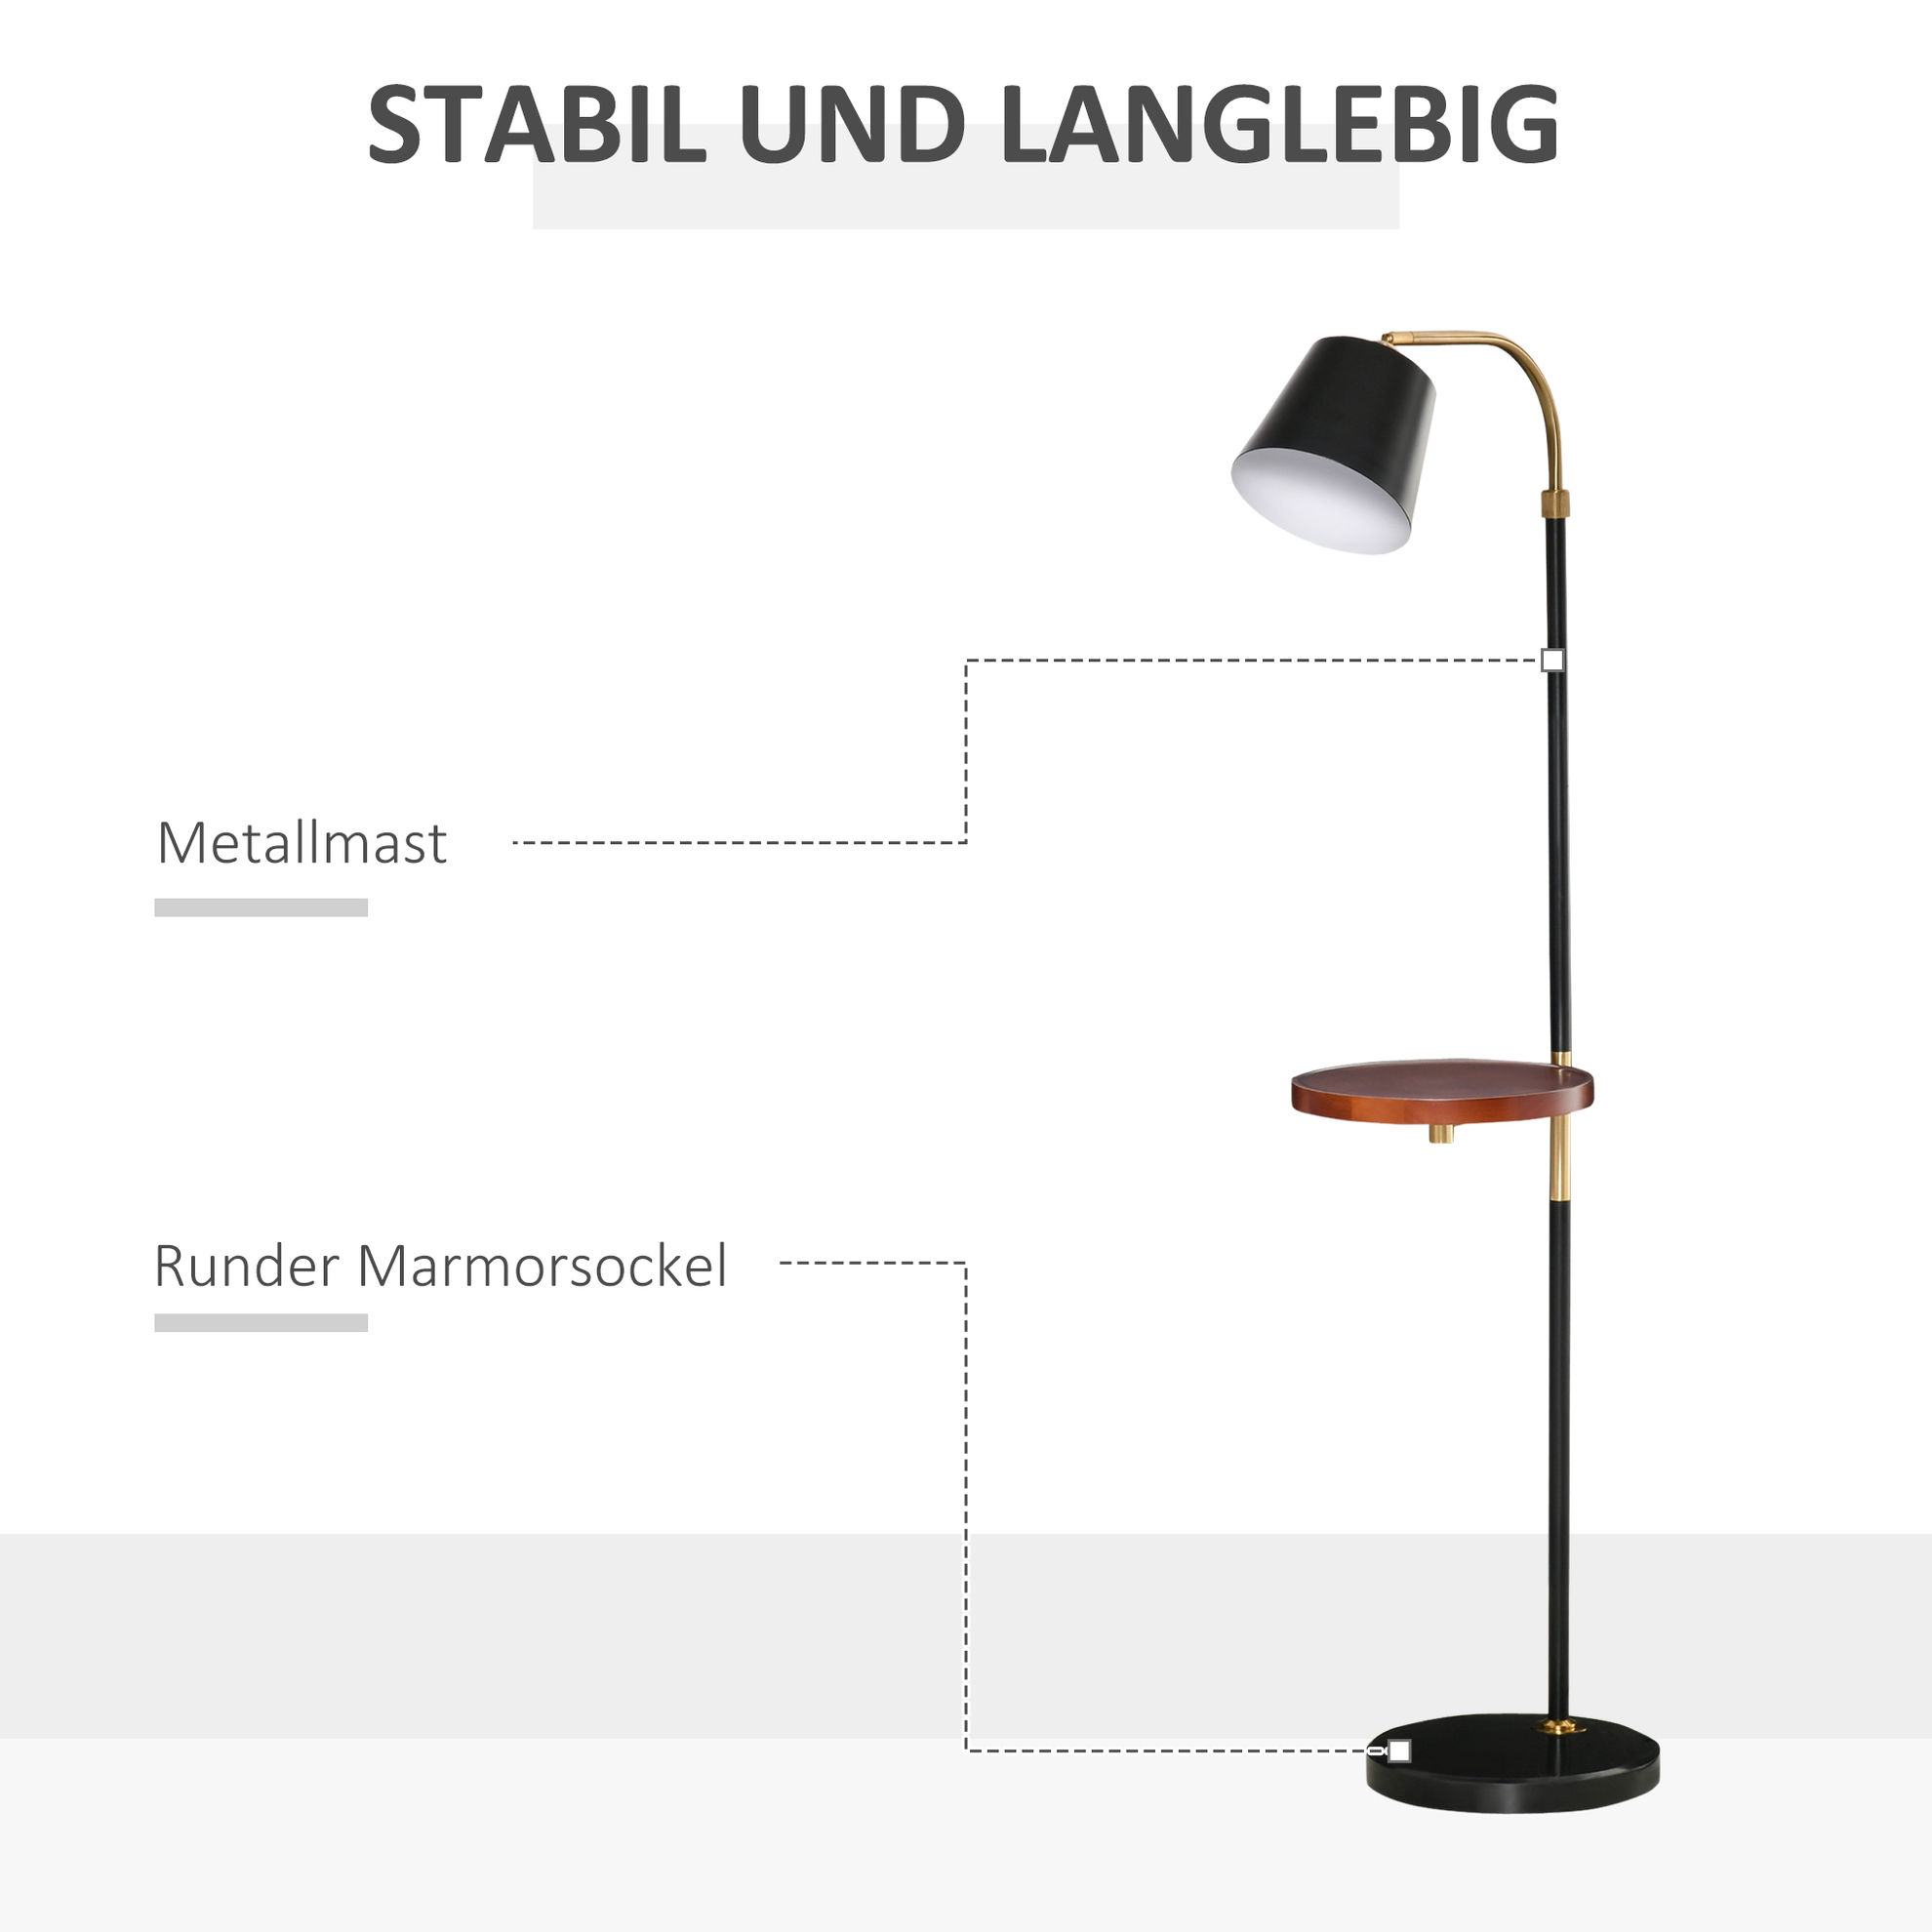 Stehlampe bunt Farbe: schwarz, gold bestellen | Weltbild.de